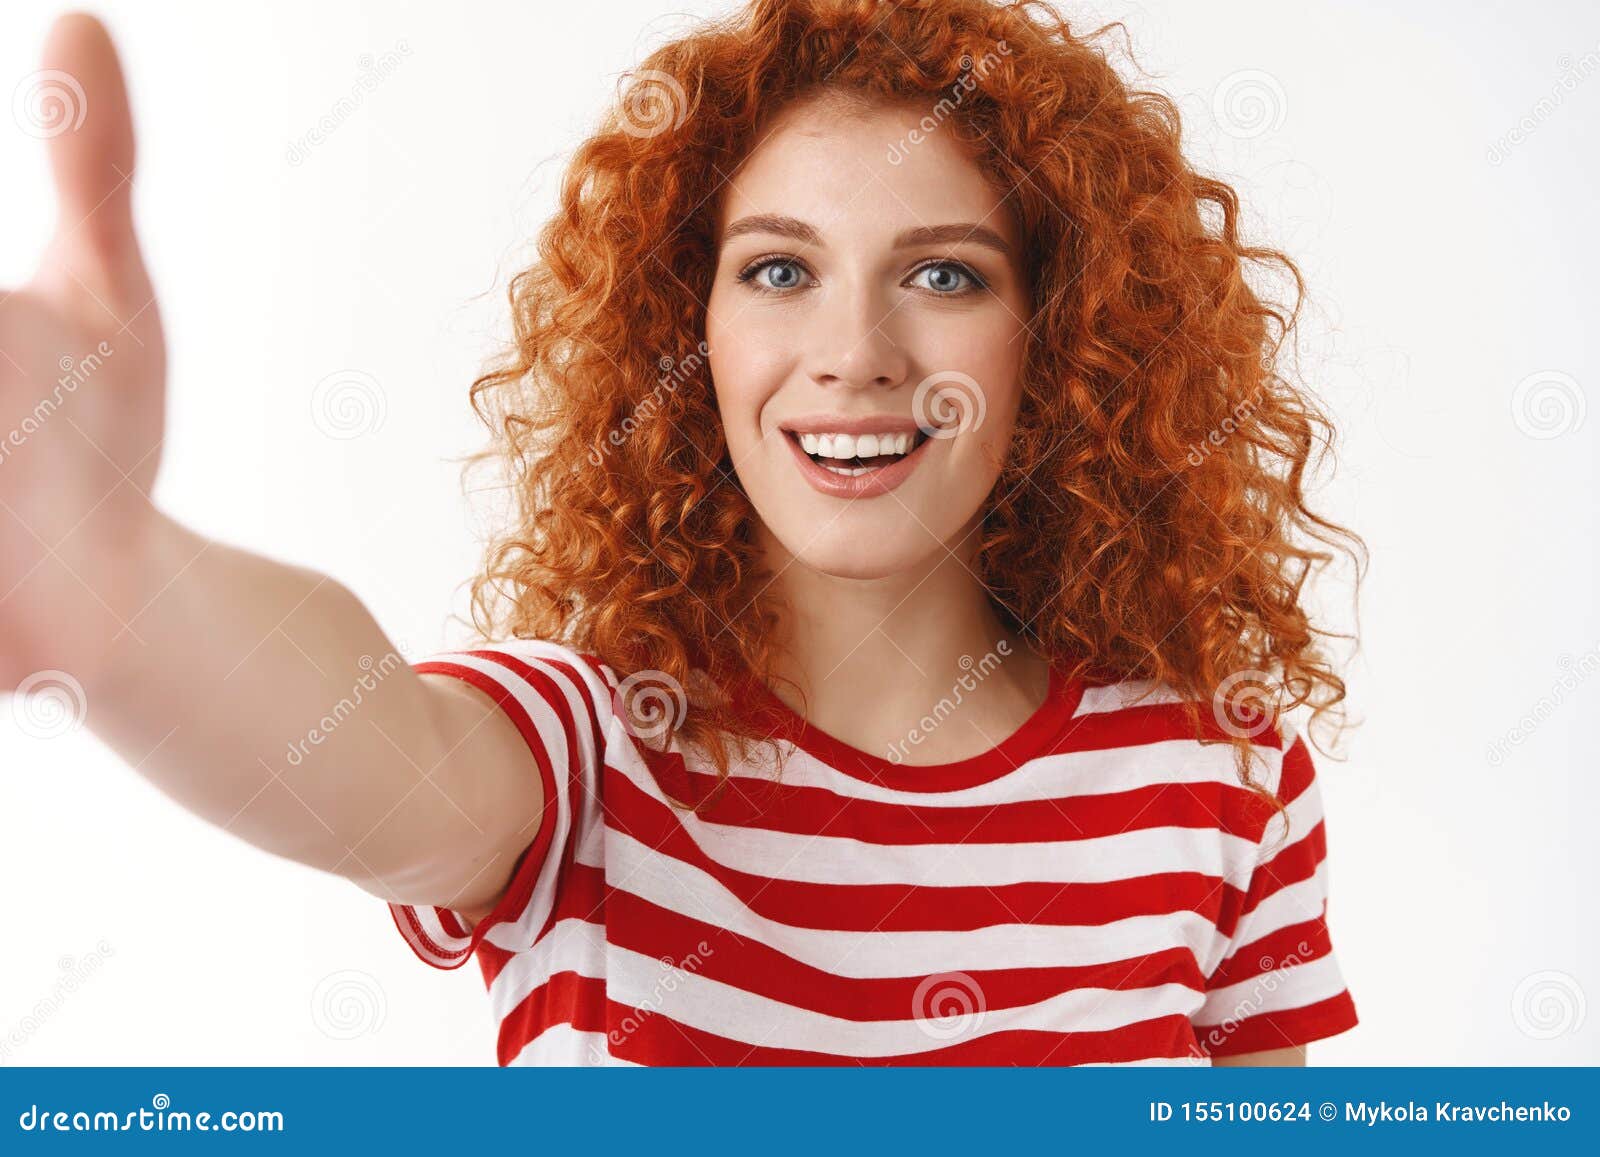 redhead selfie see through